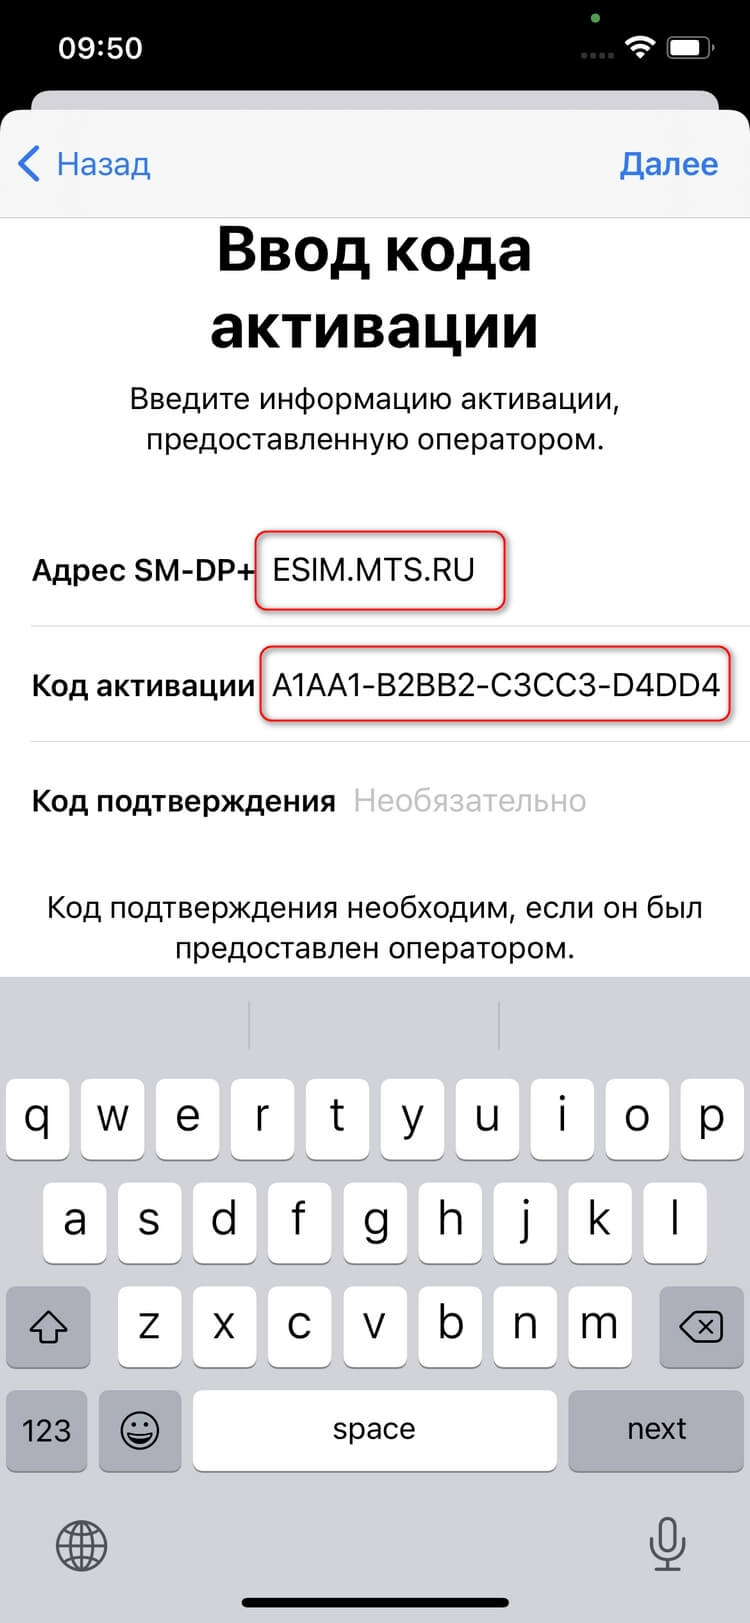 Как загрузить и активировать eSIM МТС: инструкции для iPhone, Xiaomi, Samsung, Huawei и Google Pixel